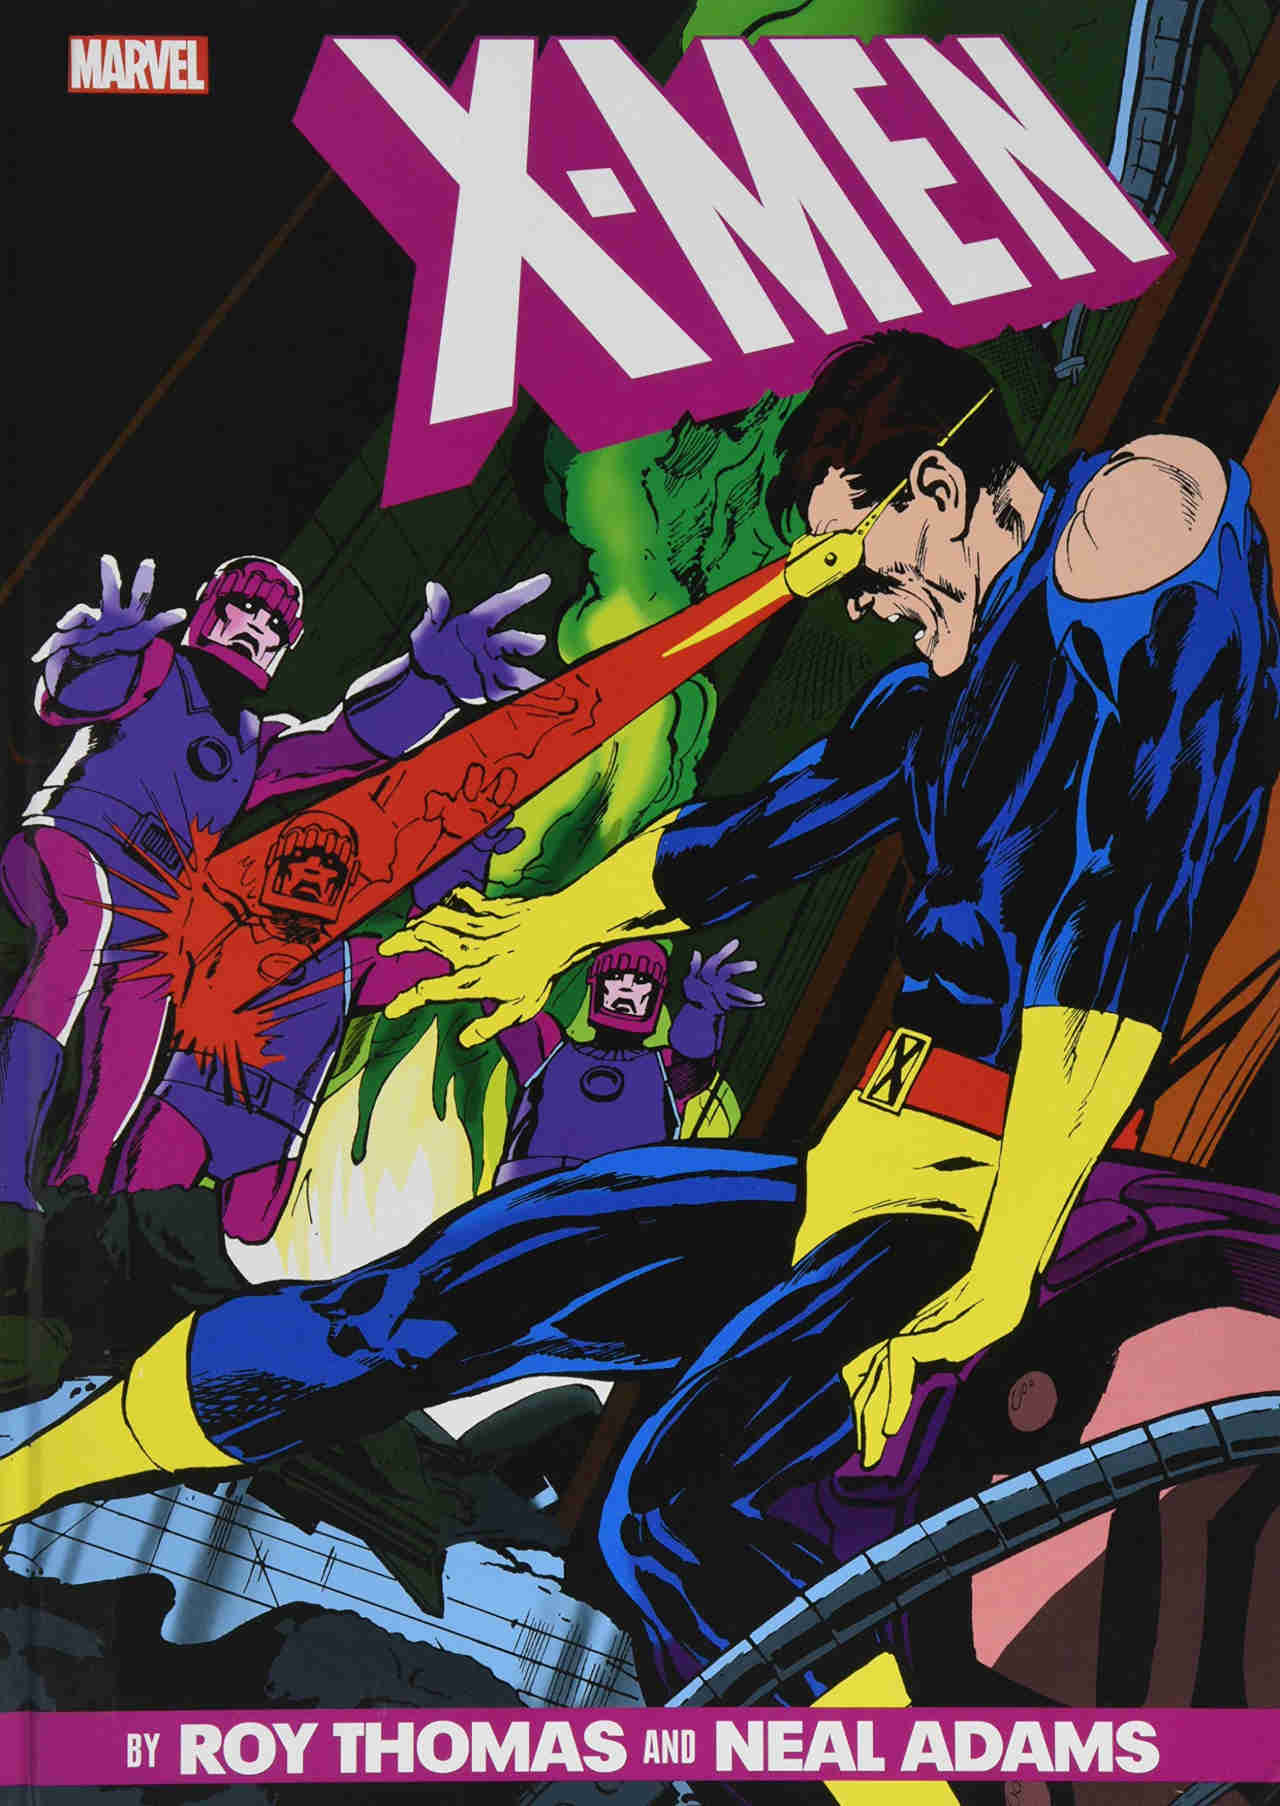 Fallece legendario artista de Batman y los X-Men